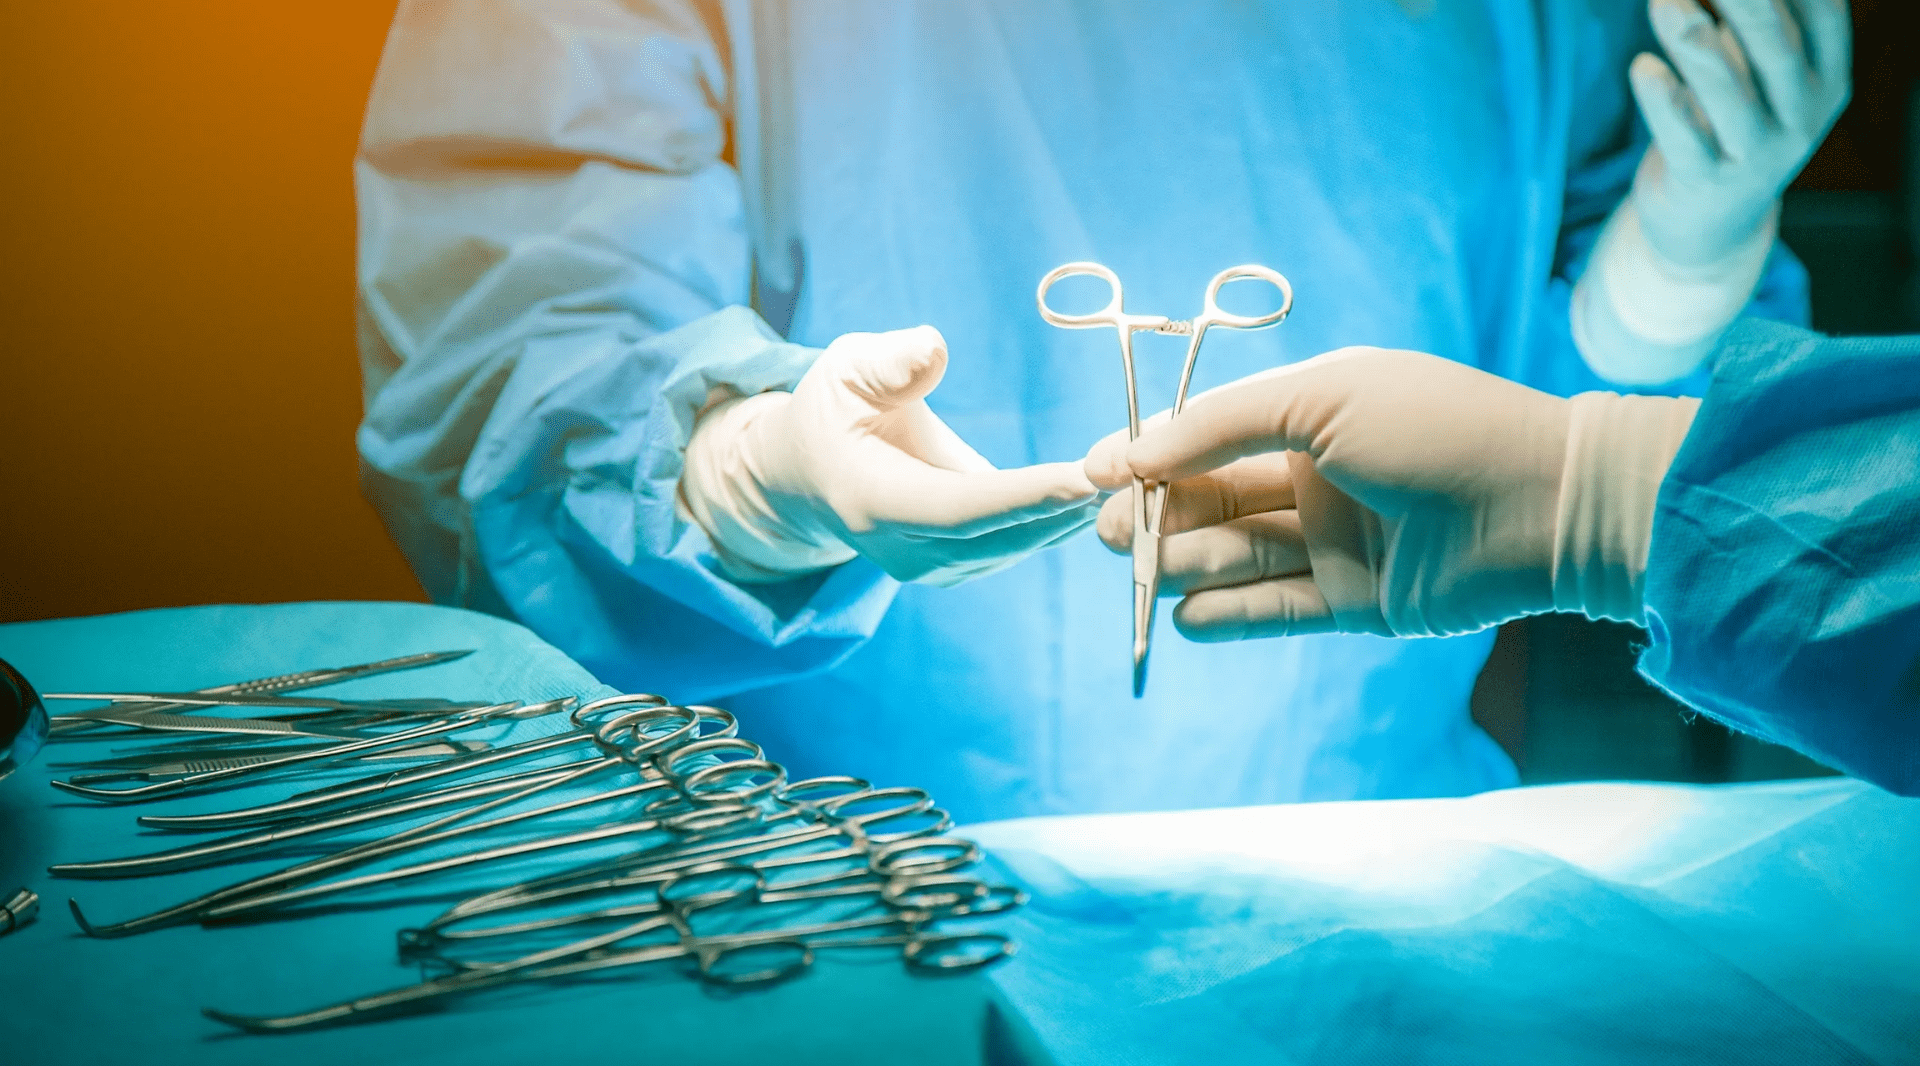 O passo a passo da cirurgia segura no Hospital Digital